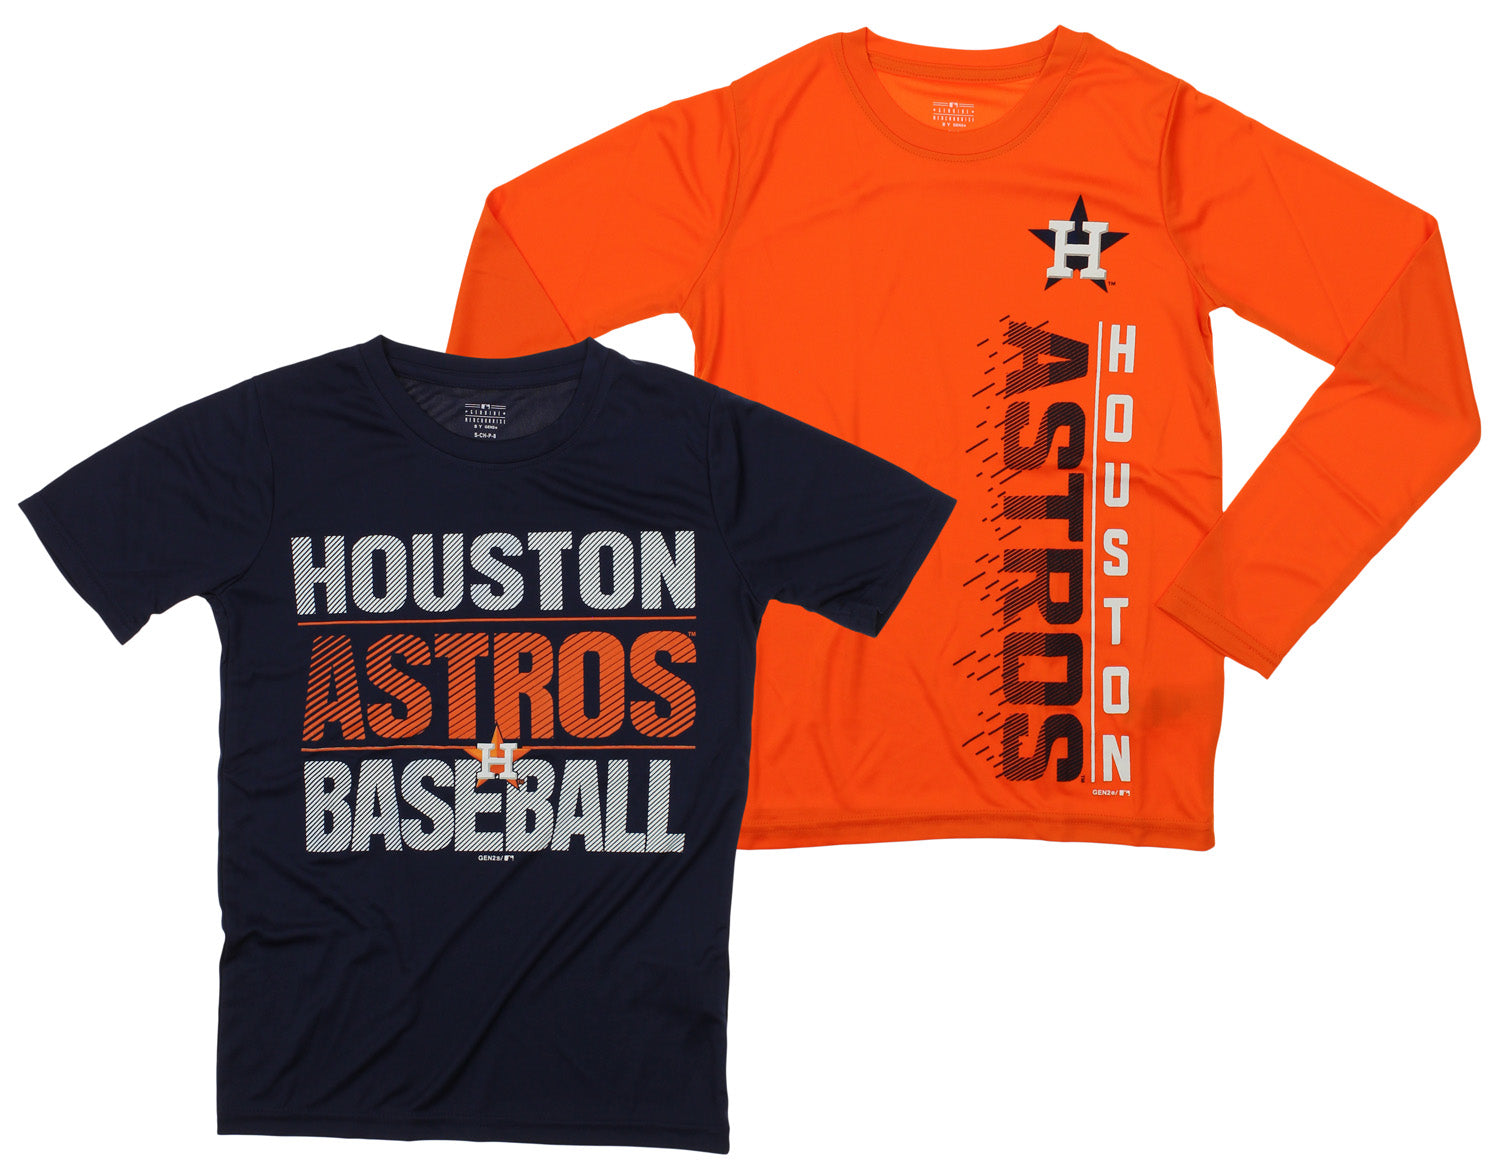 Houston Astros For Houston Astros Fans Mlb Houston Astros Apparel